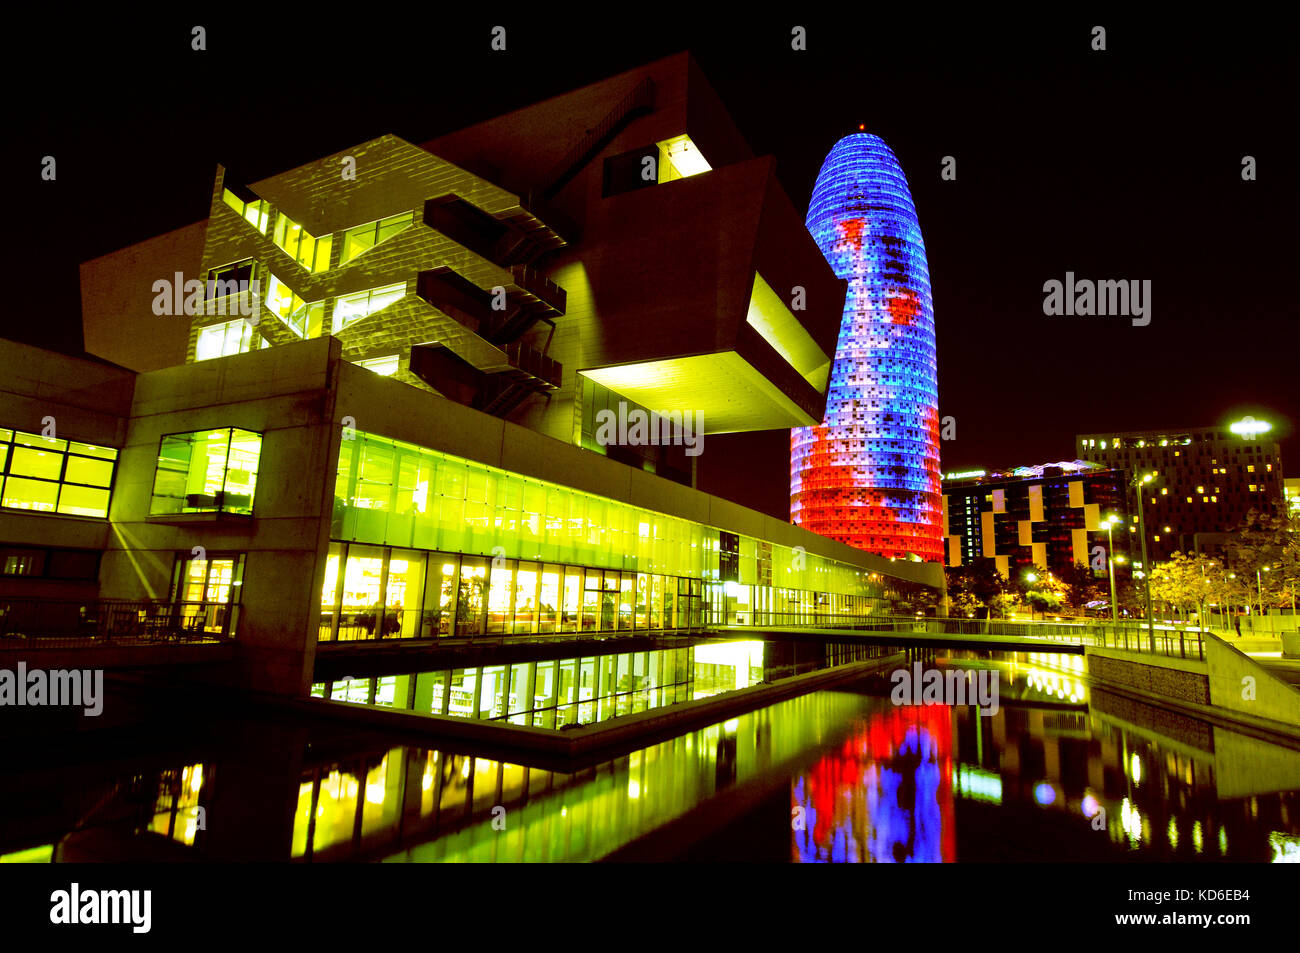 Tour Agbar par Jean nouvel, 2005 ans, et bâtiment Disseny Hub Barcelona, Design Hub of Barcelona, 2014 ans. Barcelone, Catalogne, Espagne. Banque D'Images